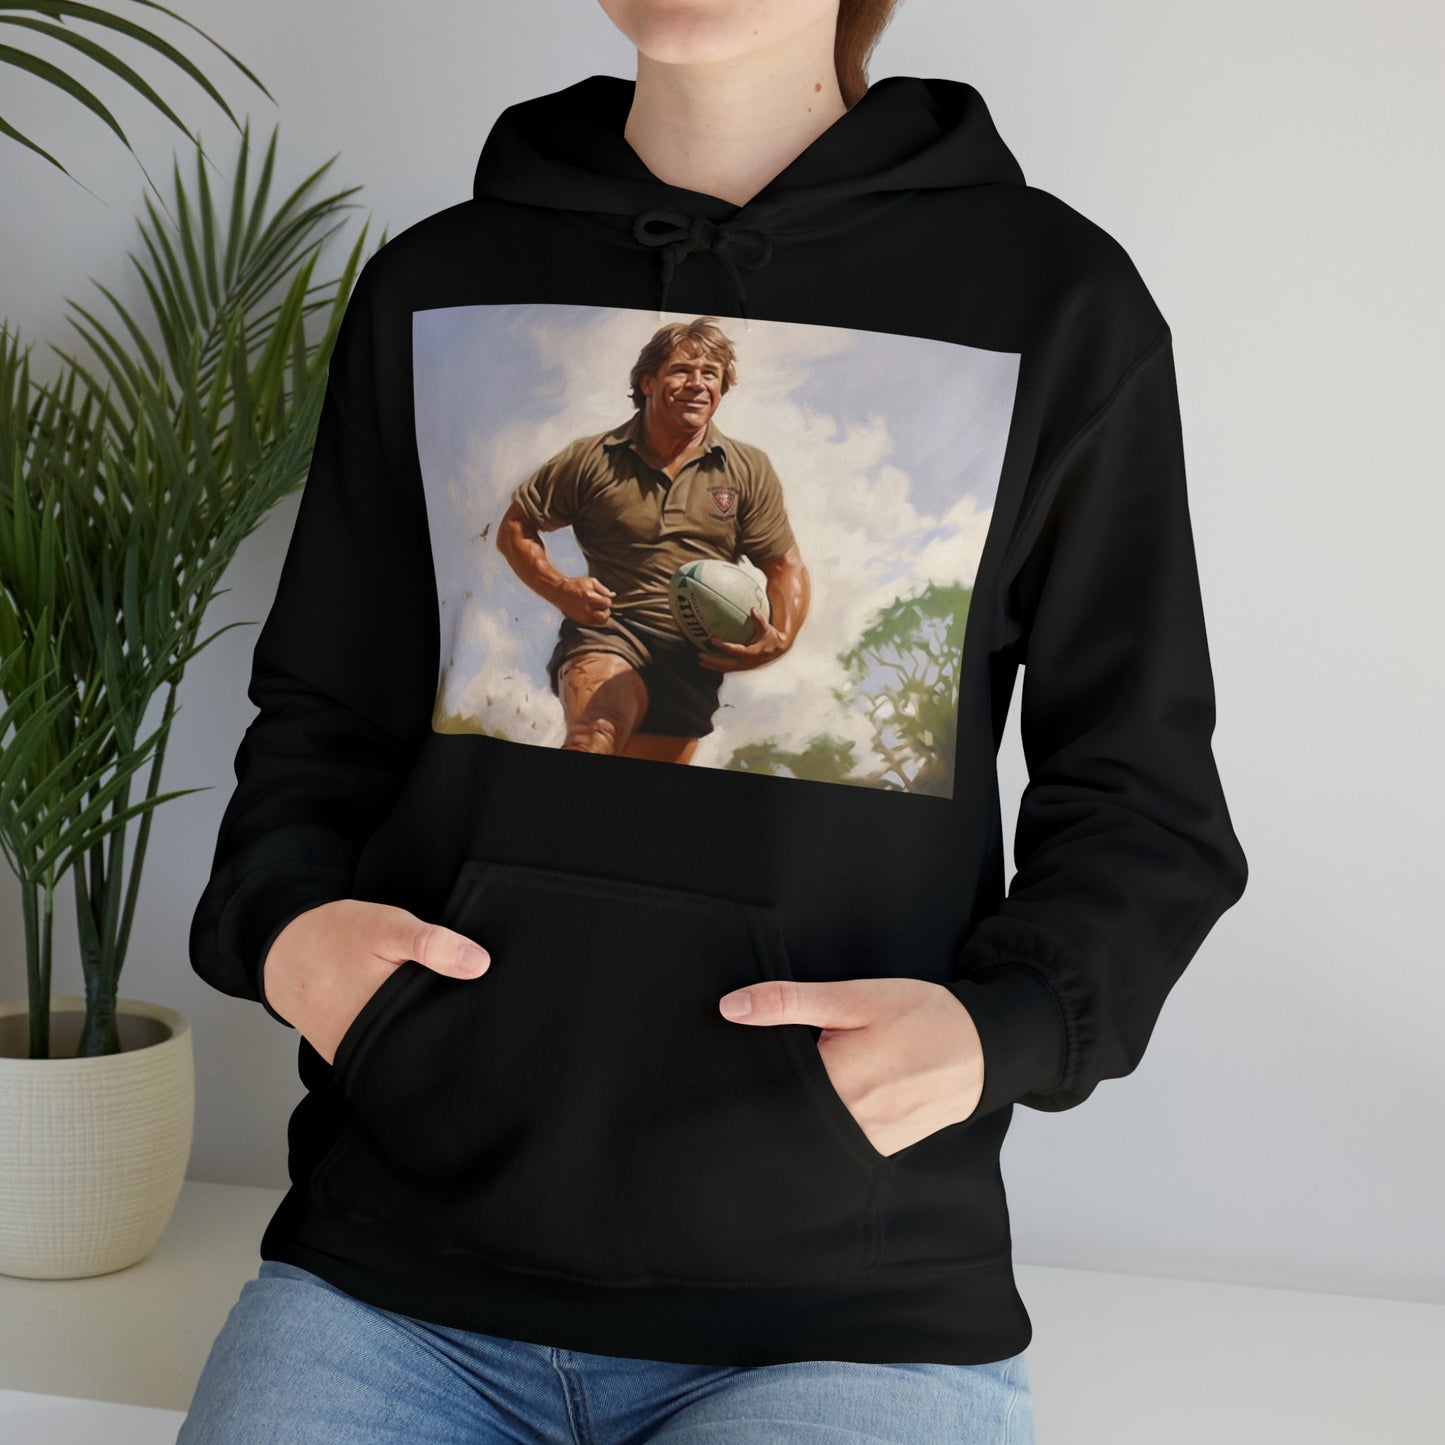 Steve Irwin 2 - black hoodie